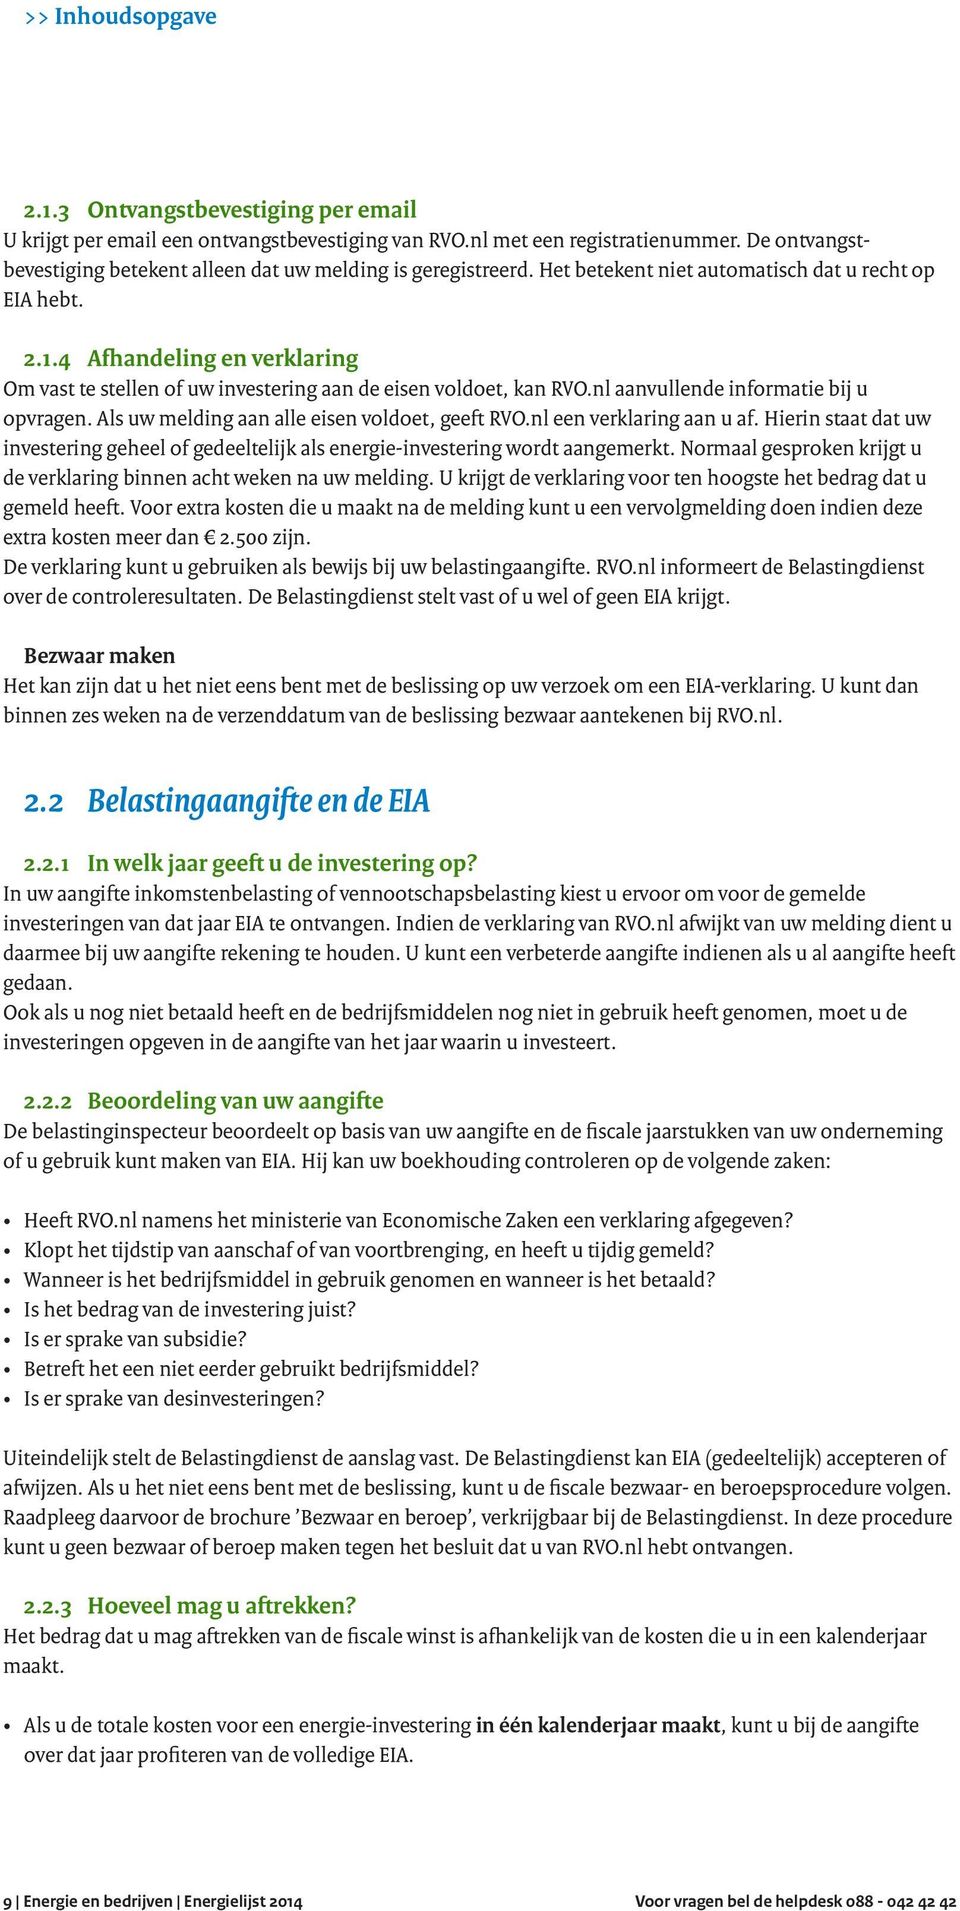 4 Afhandeling en verklaring Om vast te stellen of uw investering aan de eisen voldoet, kan RVO.nl aanvullende informatie bij u opvragen. Als uw melding aan alle eisen voldoet, geeft RVO.